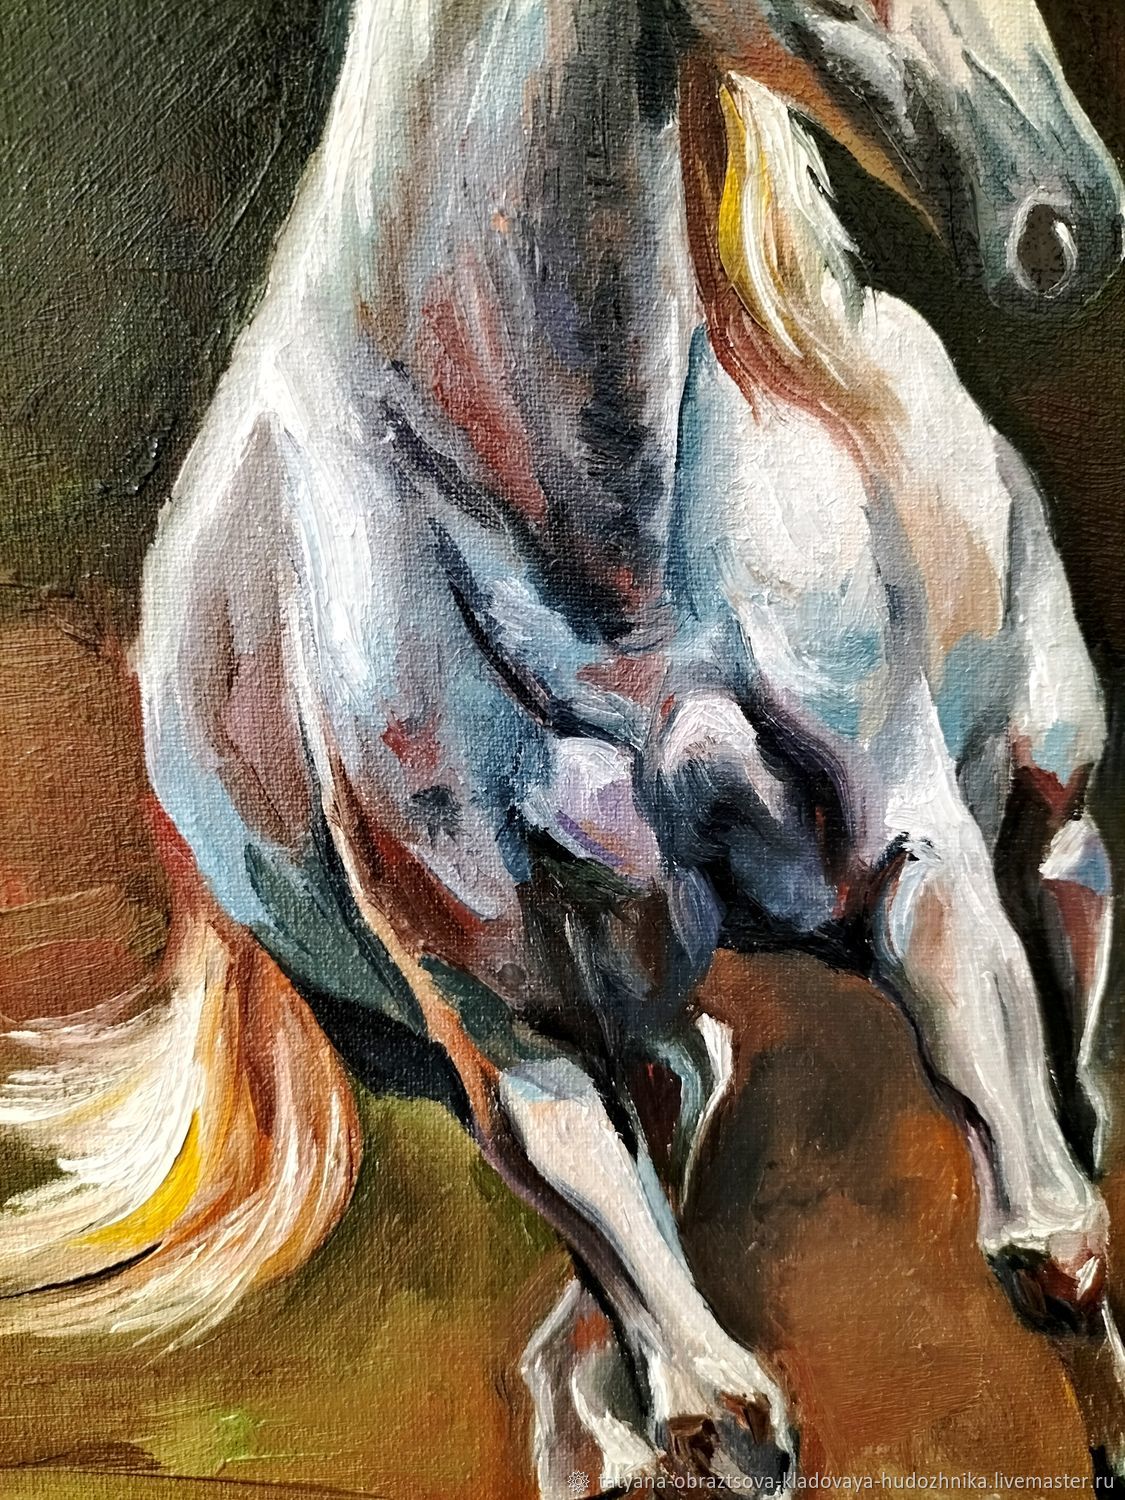 Написал лошадки. Картина лошади. Строптивый конь. Картины лошадей маслом на холсте. Грациозная лошадь.